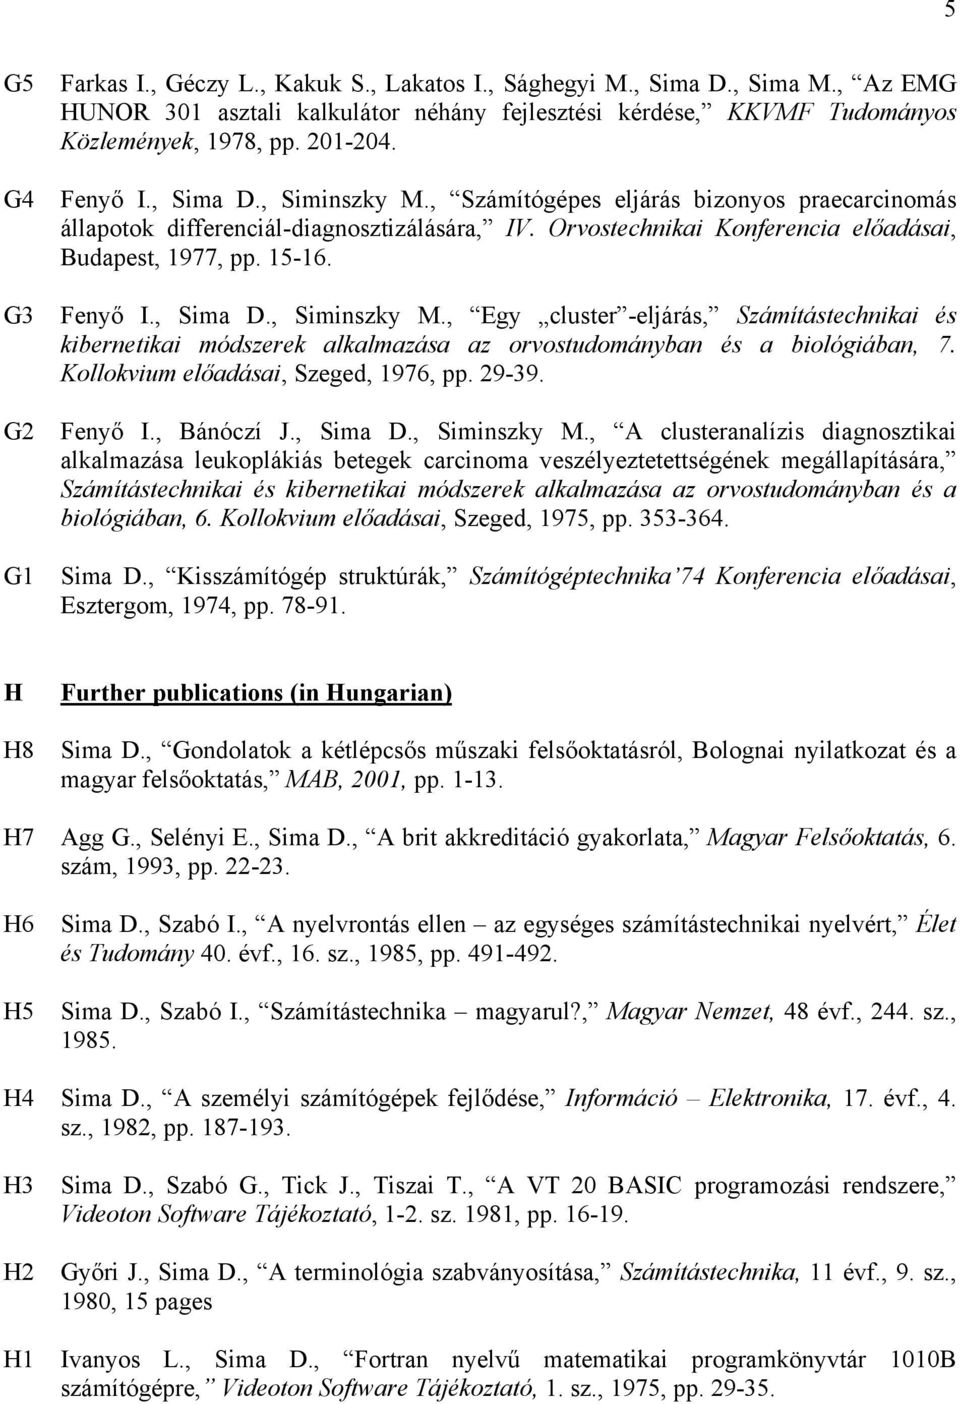 Fenyő I., Sima D., Siminszky M., Egy cluster -eljárás, Számítástechnikai és kibernetikai módszerek alkalmazása az orvostudományban és a biológiában, 7. Kollokvium előadásai, Szeged, 1976, pp. 29-39.